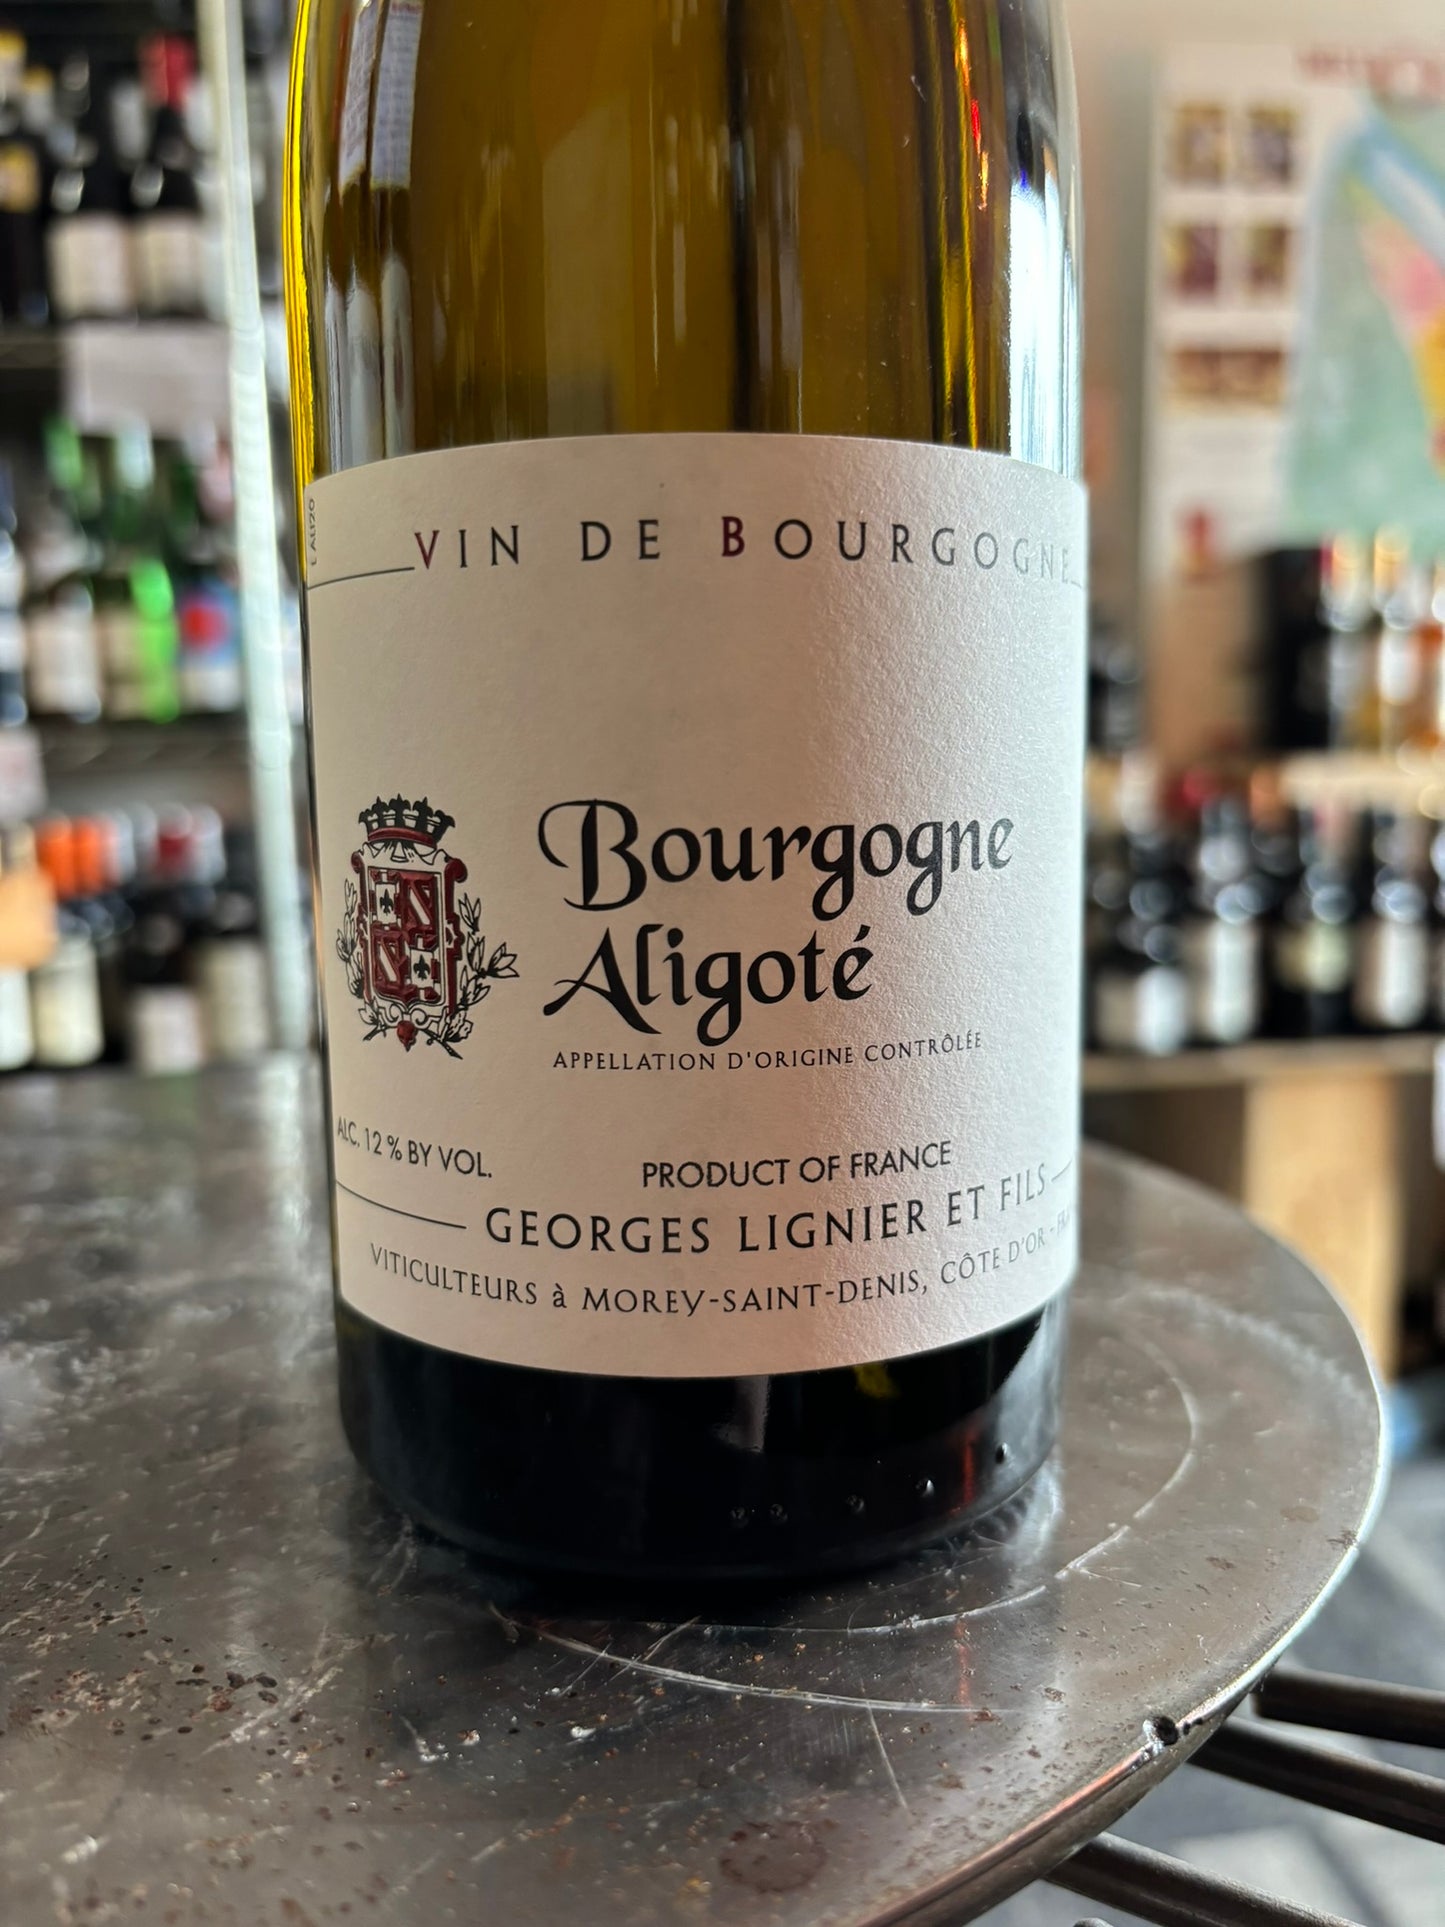 GEORGES LIGNIER ET FILS 2020 Bourgogne Aligote (Bourgogne, France)